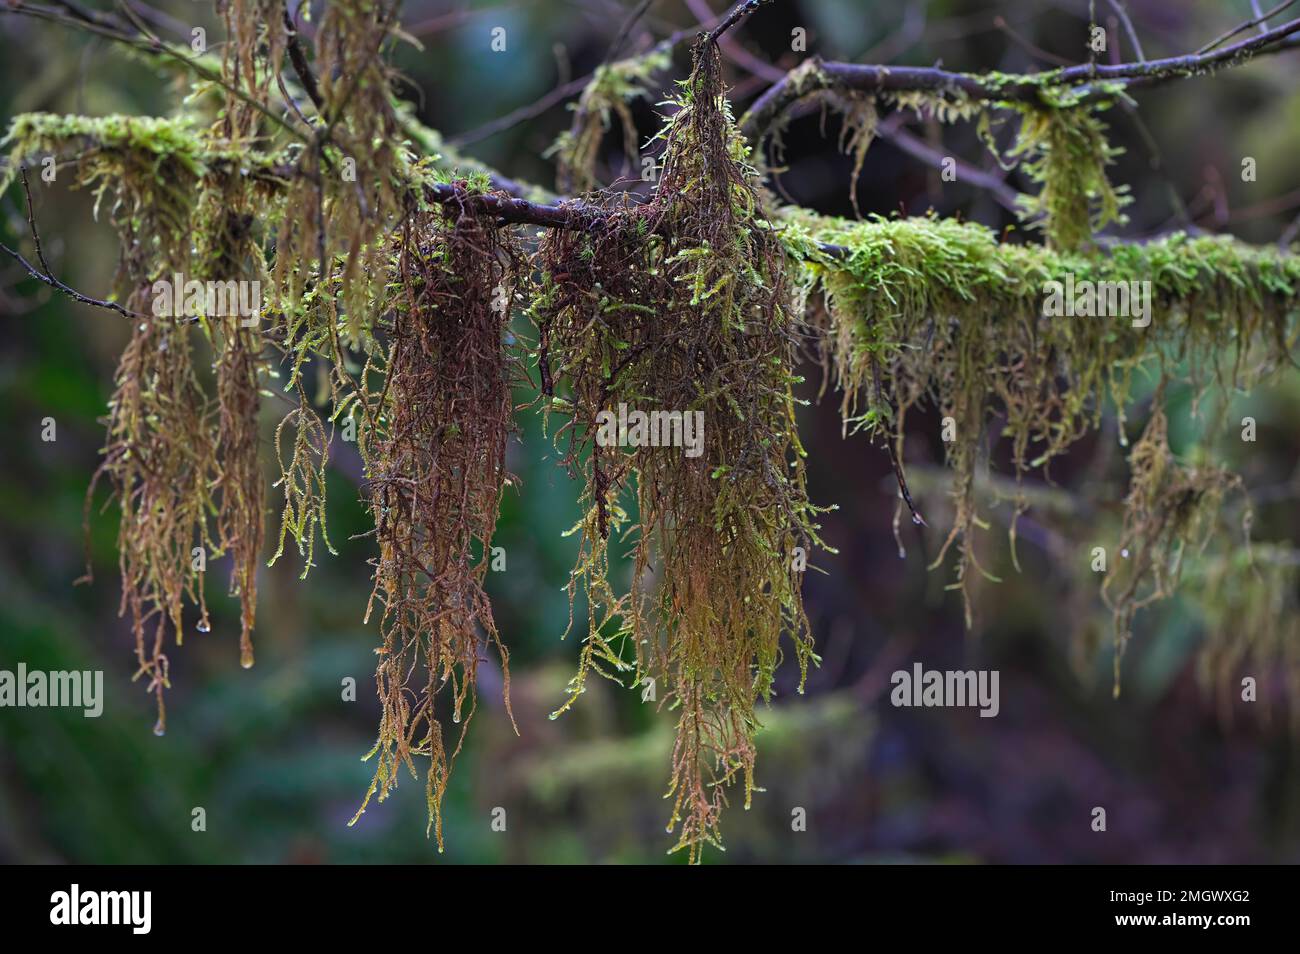 Sphagnum Moss accrochée à une branche d'arbres dans le Nord-Ouest du Pacifique - Colombie-Britannique, Canada. Banque D'Images